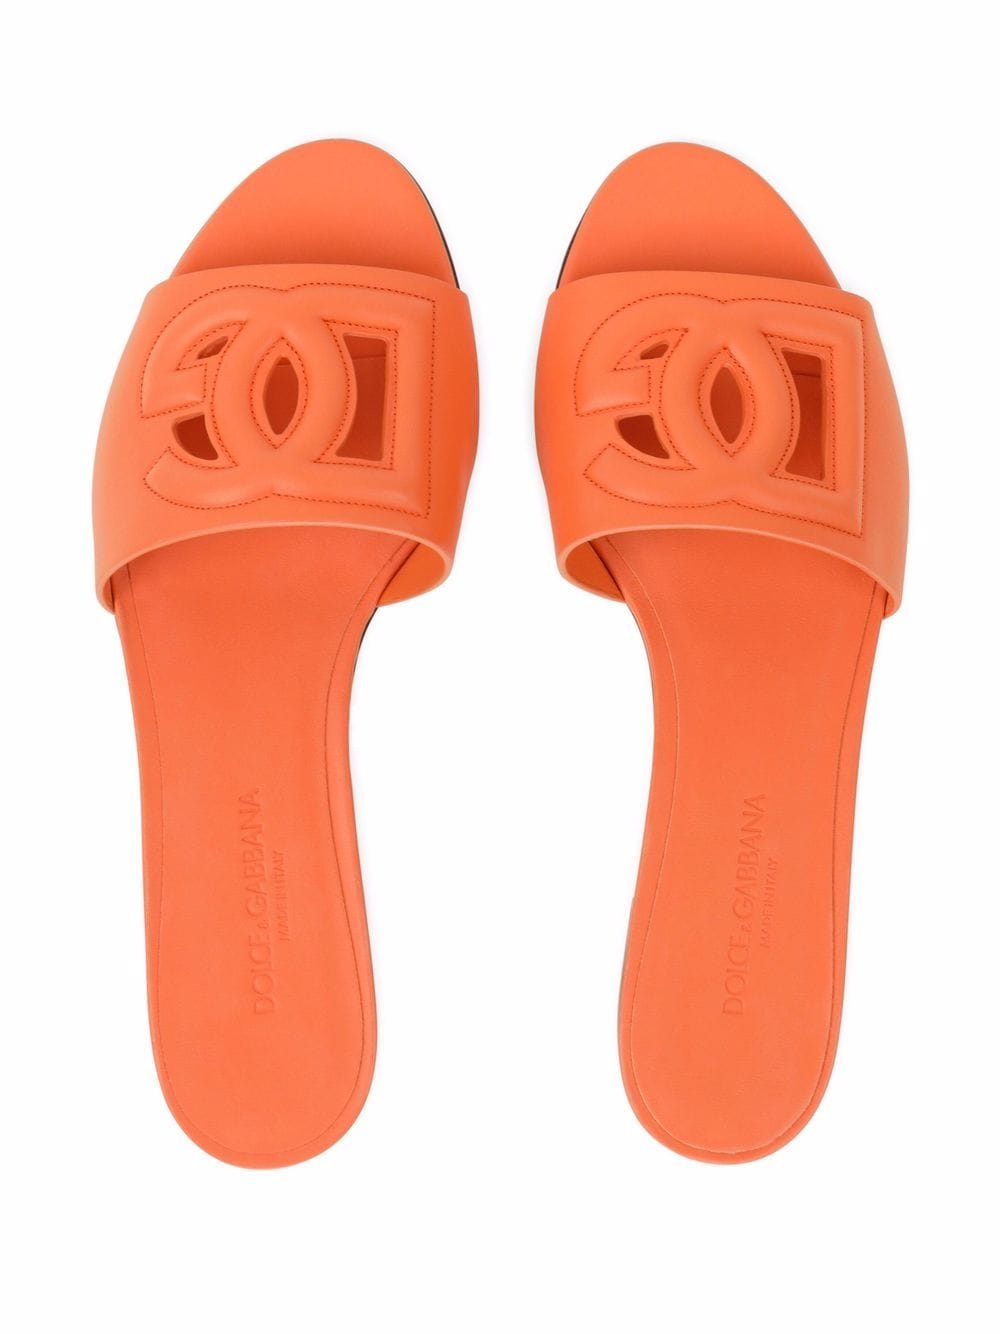 Orange DG-logo leather sandals<BR/><BR/><BR/>